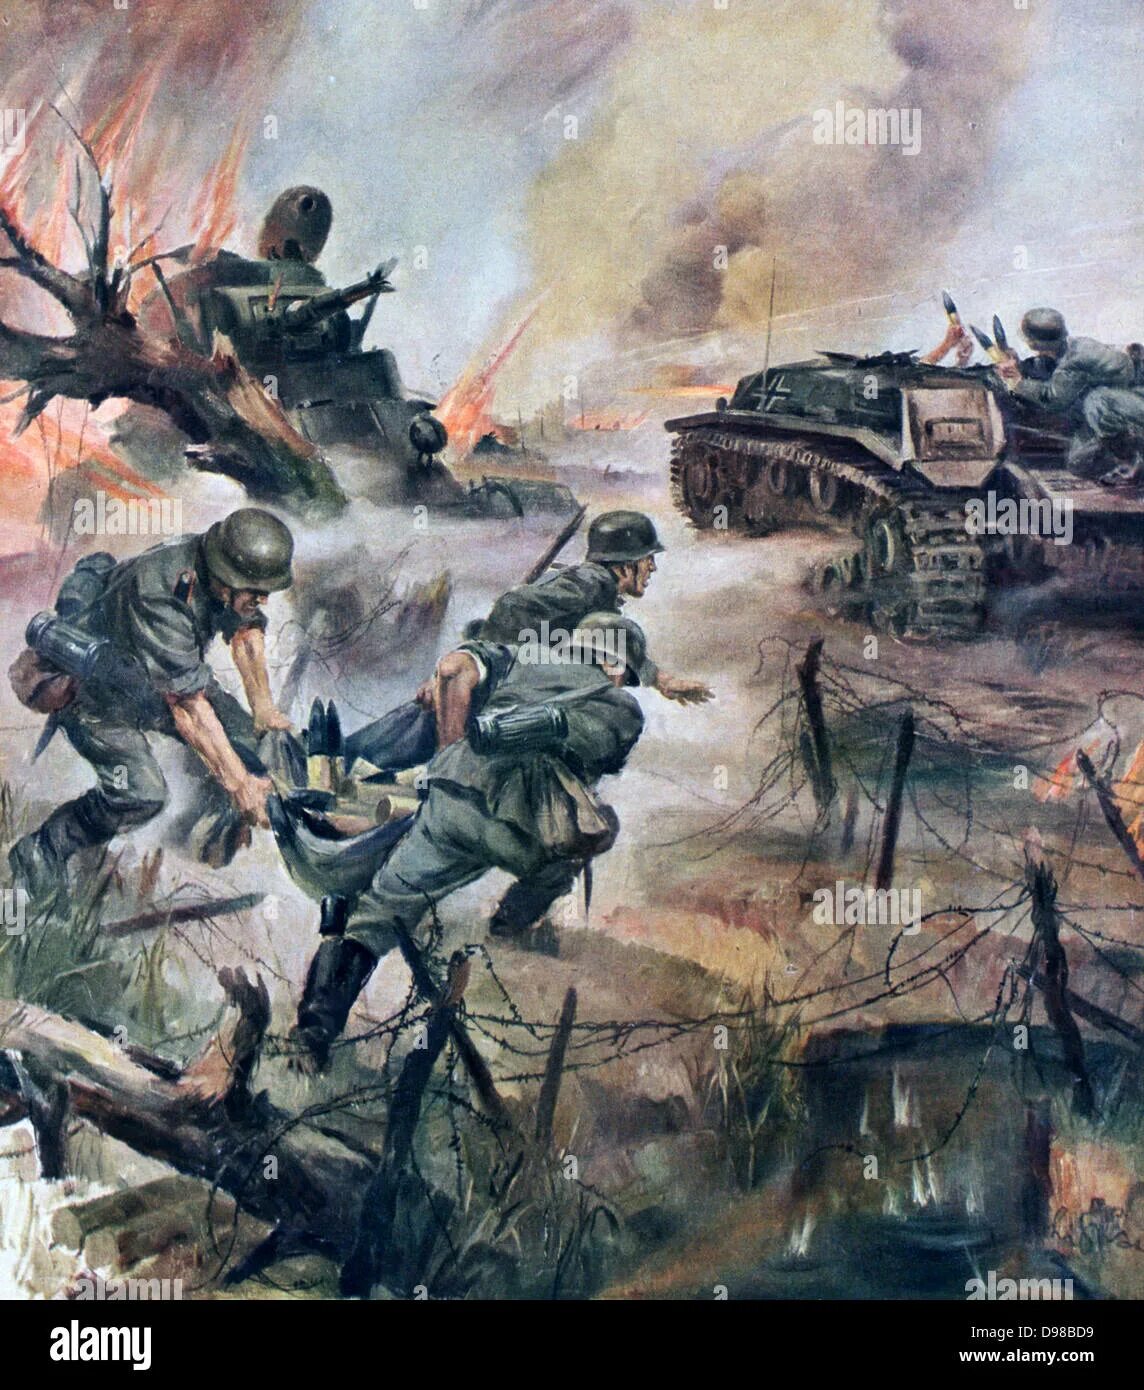 Ханс лиска военные картины. Современные картины о войне. Рисунок про войну.